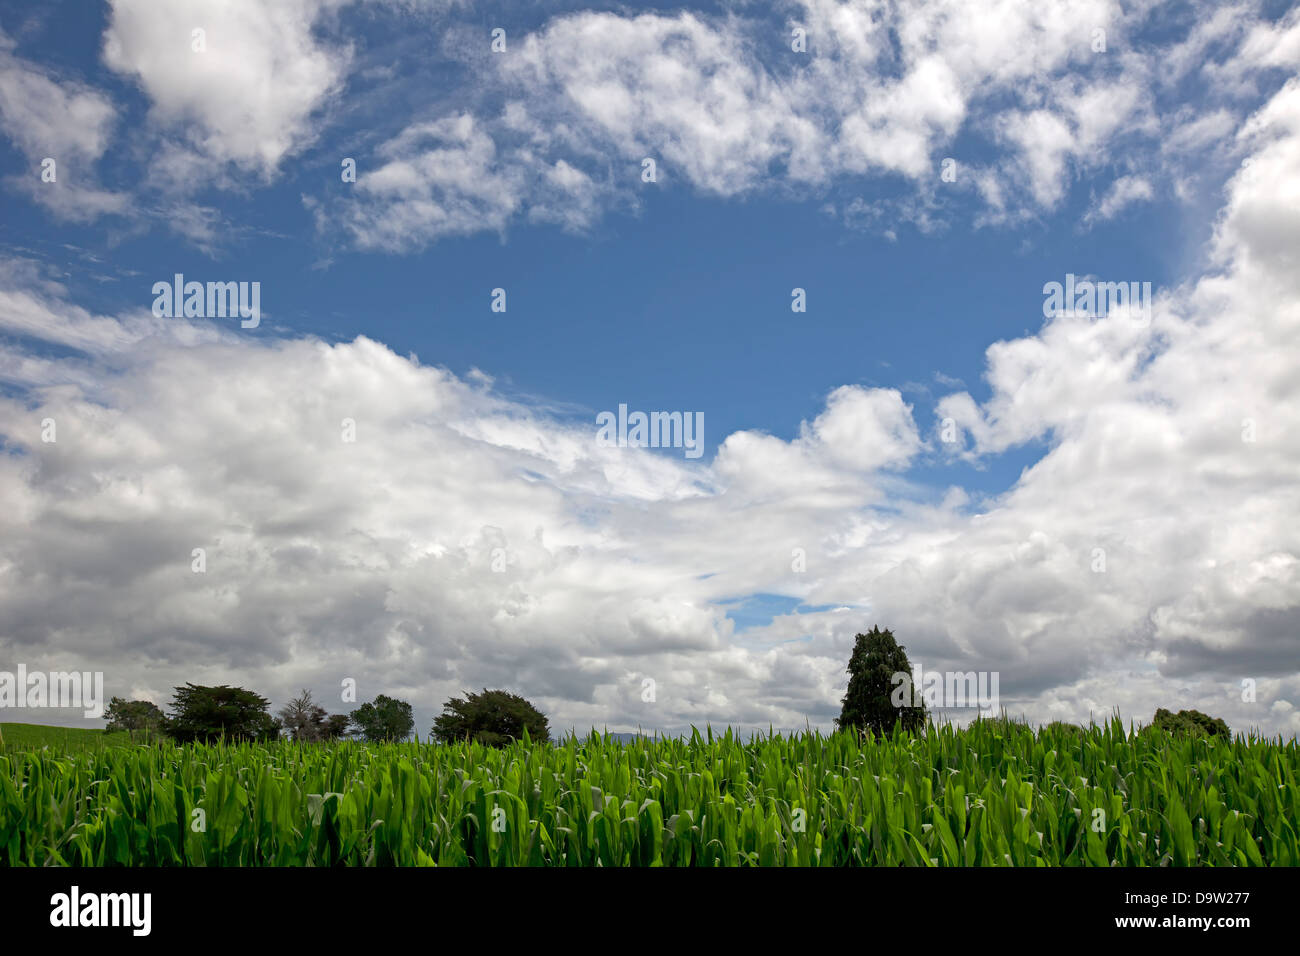 Popcorn-Feld mit Bäumen und blauen Wolkenhimmel Stockfoto